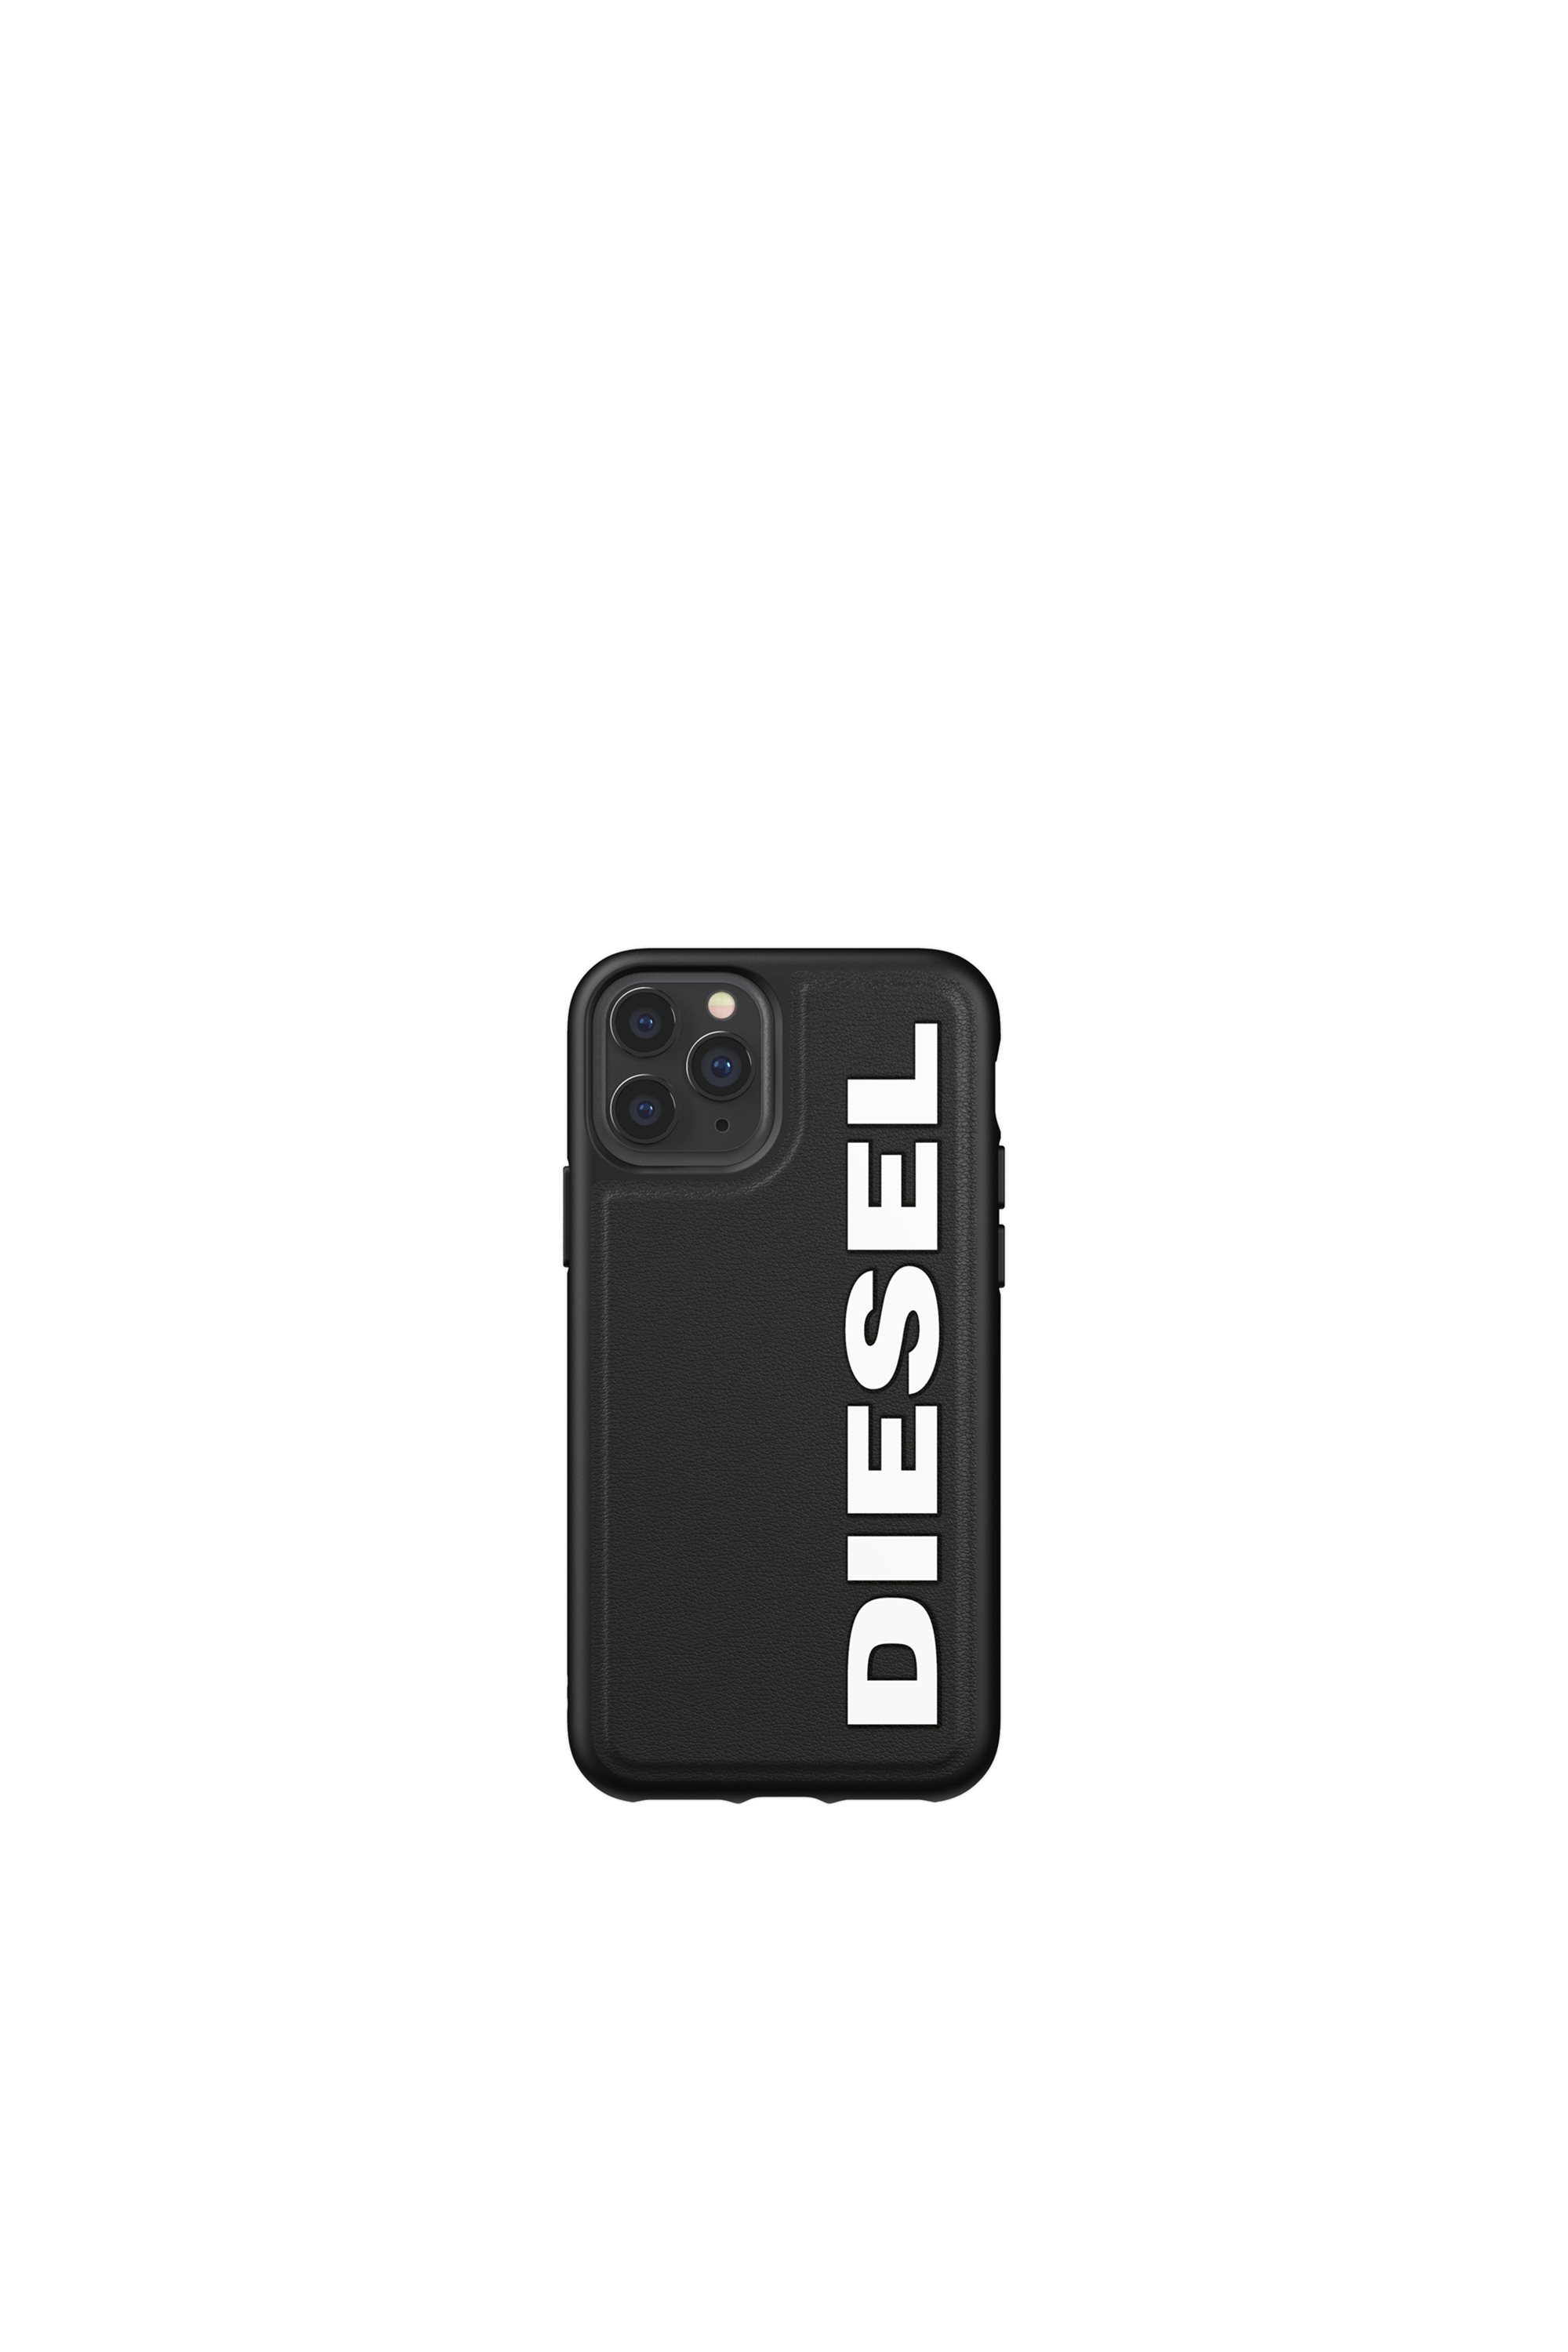 Diesel - 41982, Black - Image 2